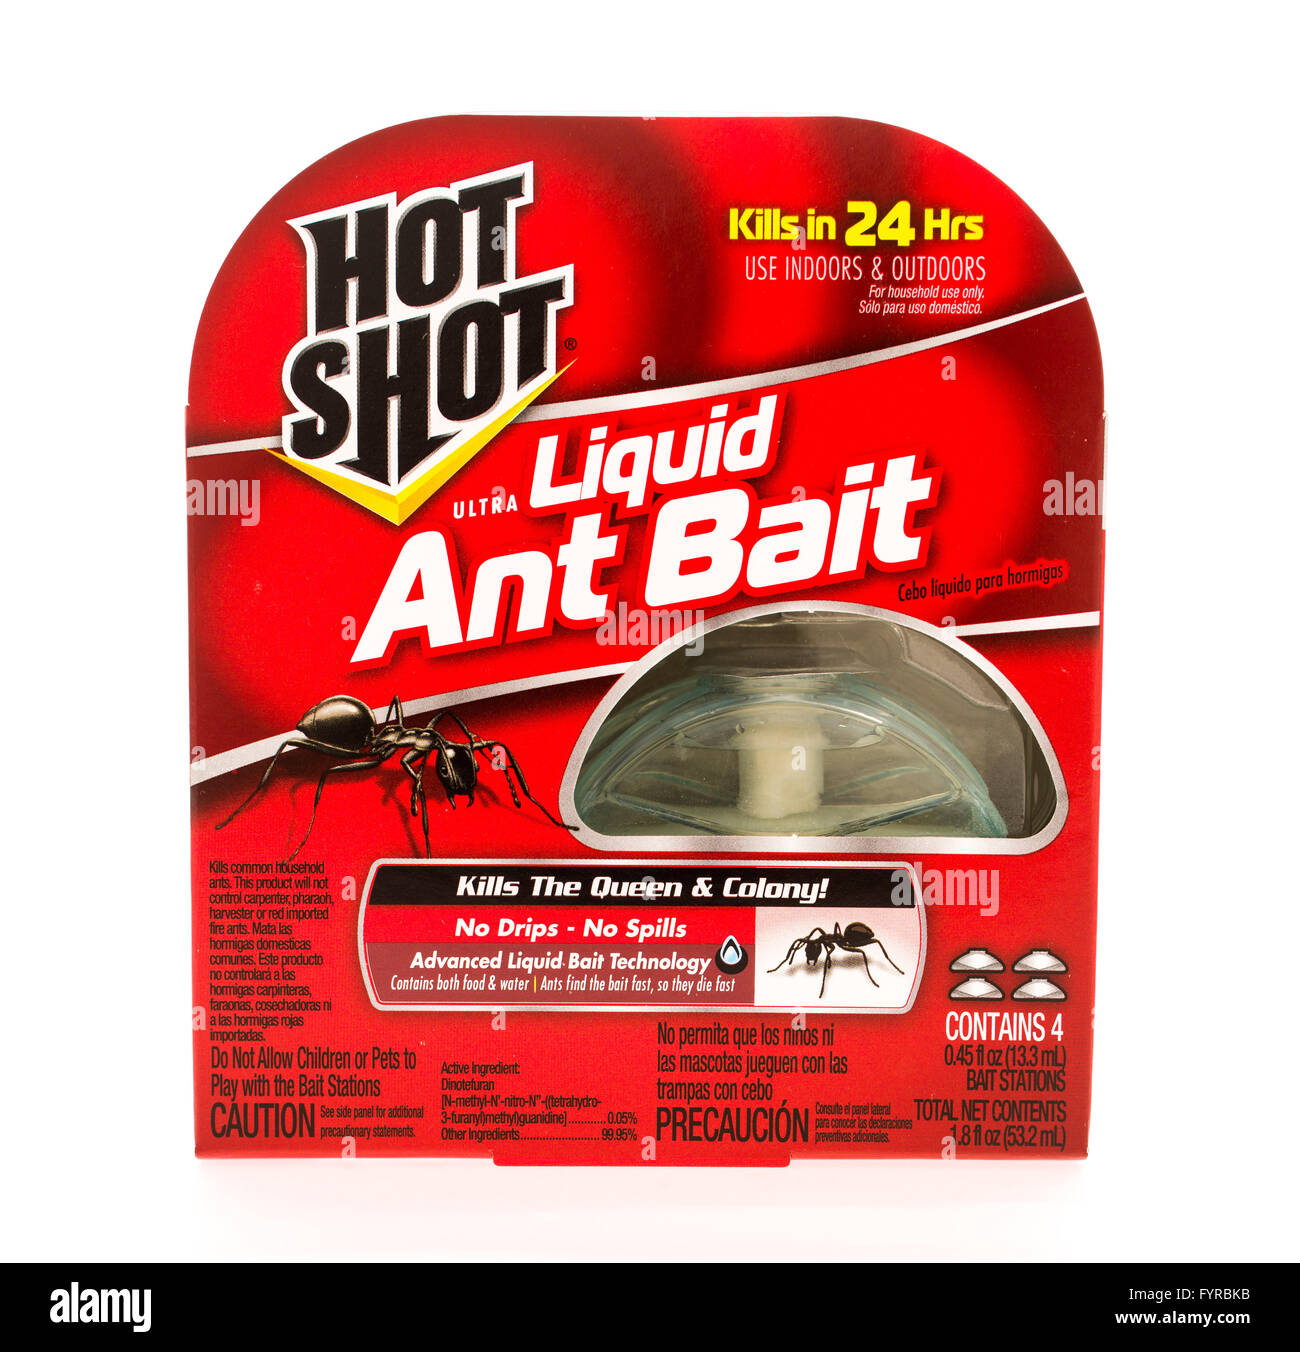 Winneconni, WI - 11 de junio de 2015: Caja de cuatro estaciones de cebo utilizado para killin hormigas hechas por Hot Shot Foto de stock